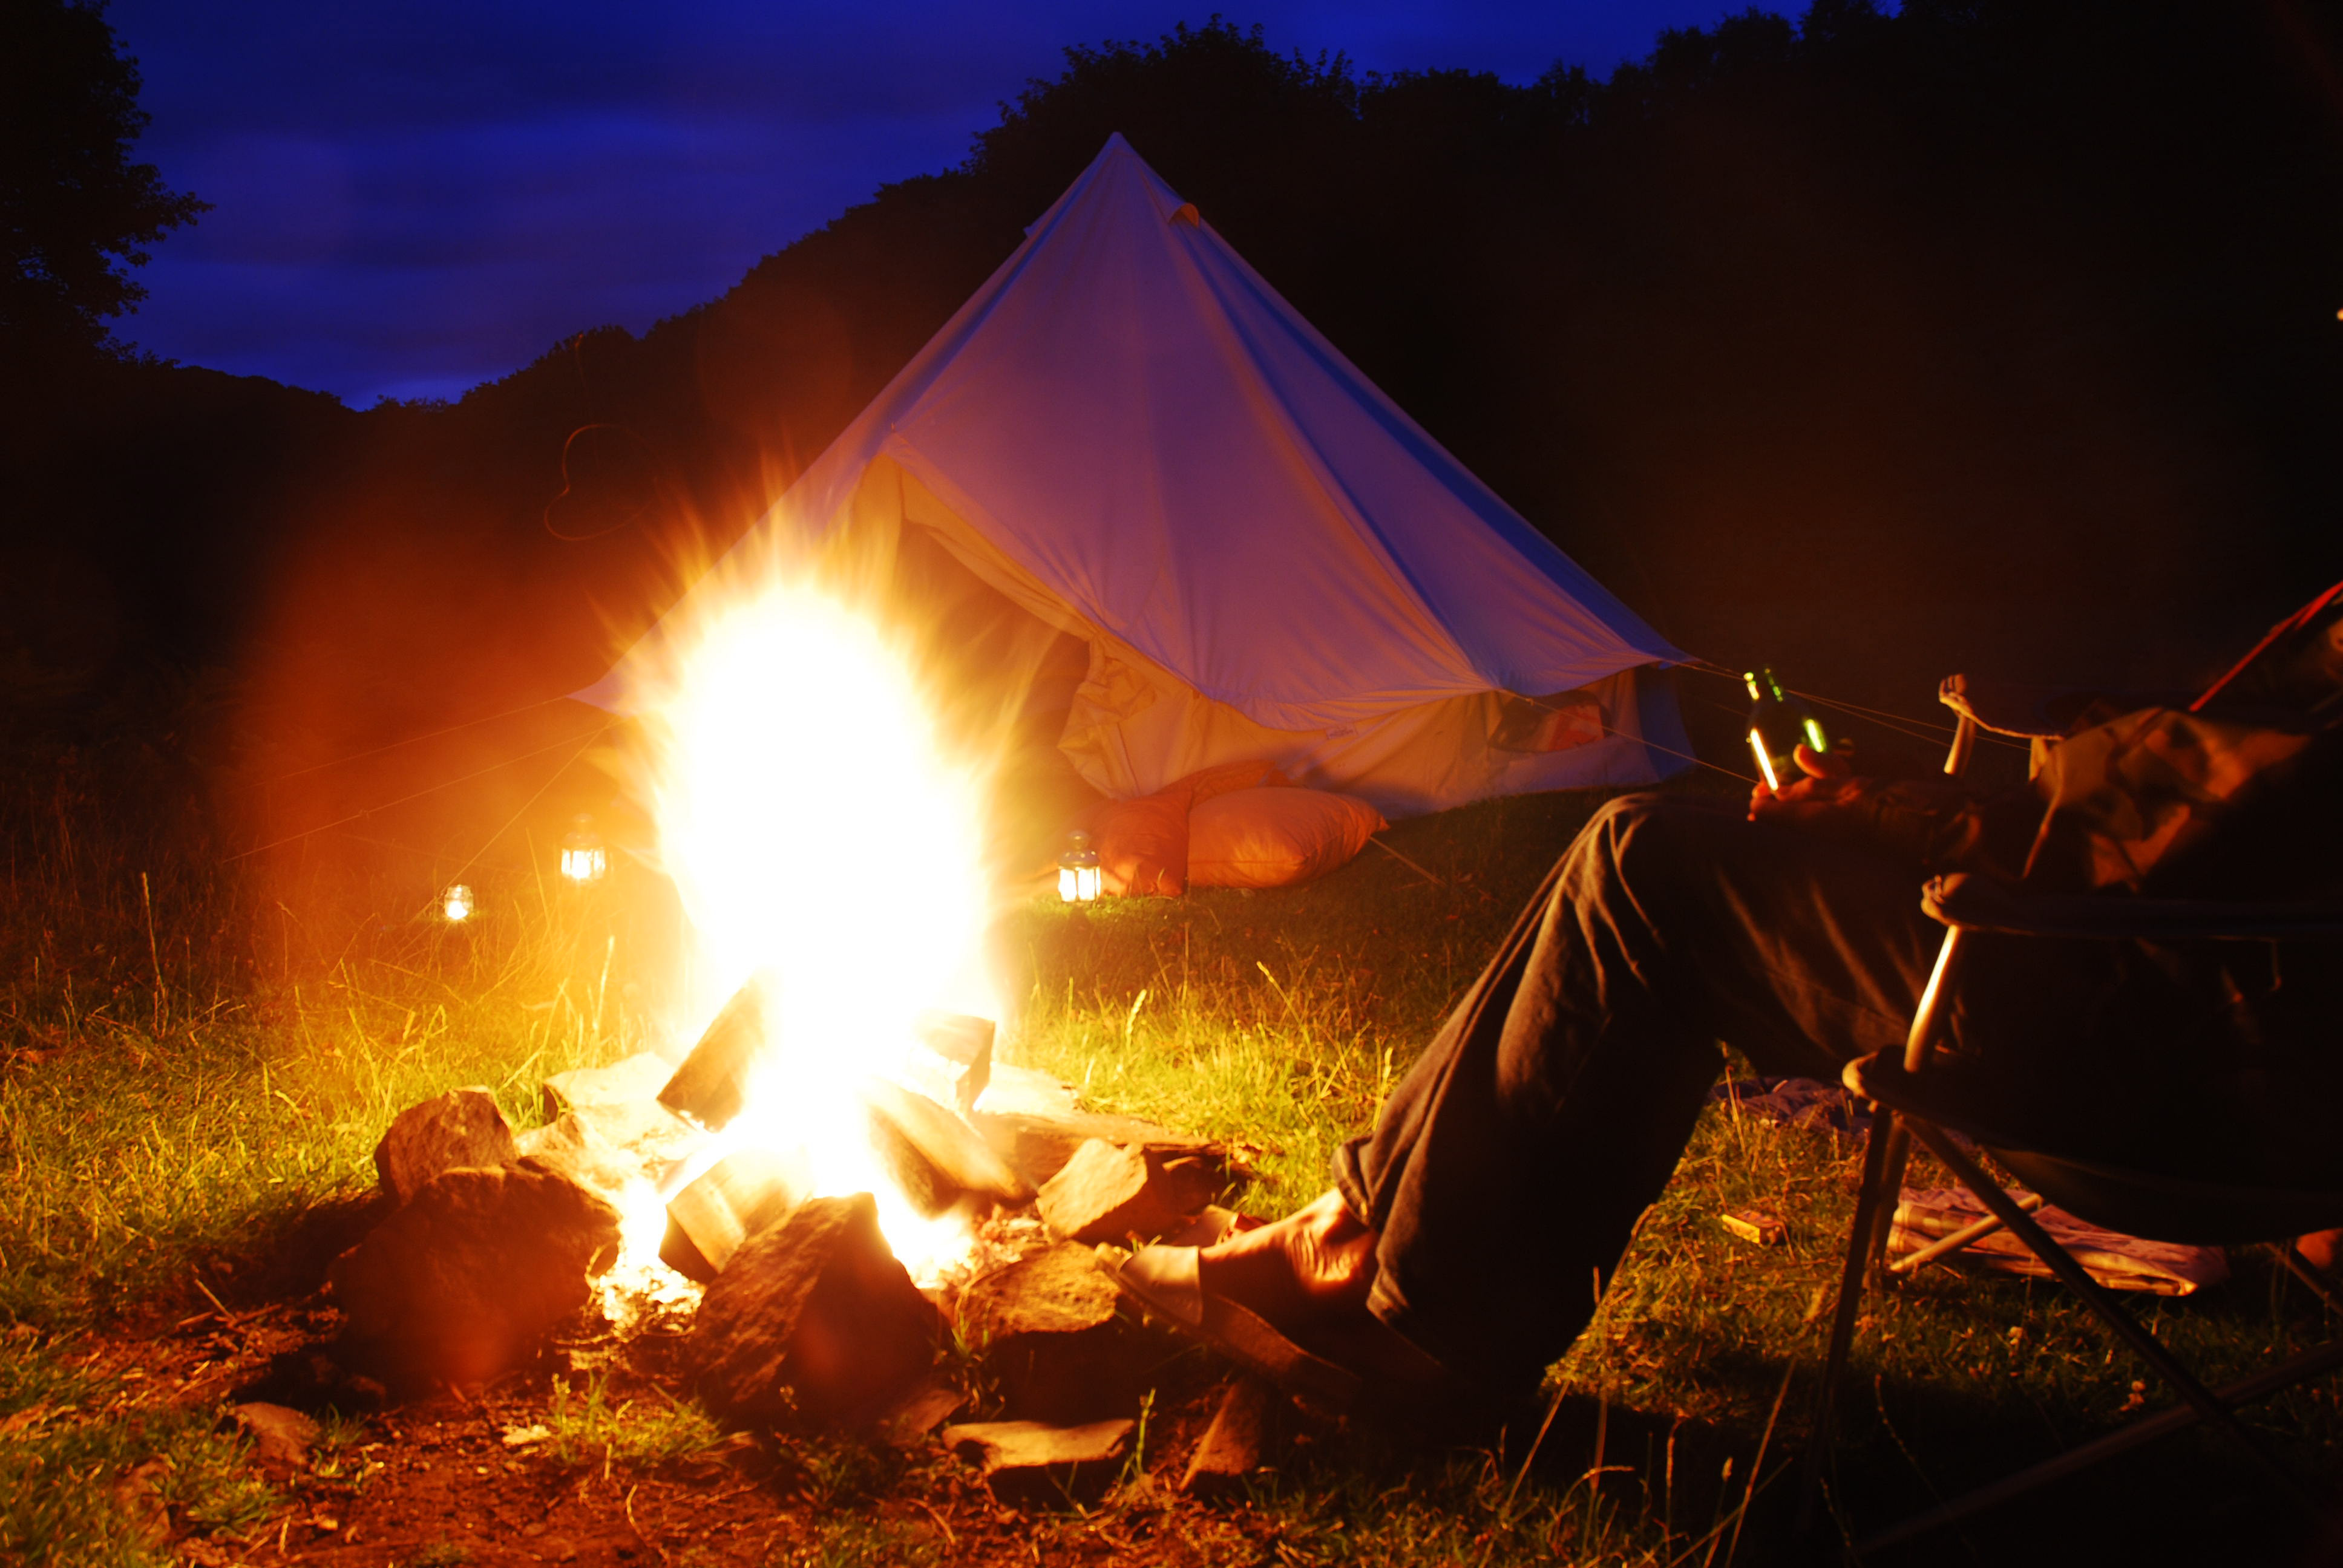 Look at the camp. Палатка ночью. Camping Bonfire. Огонь лето. Палатка в лесу с огнем.